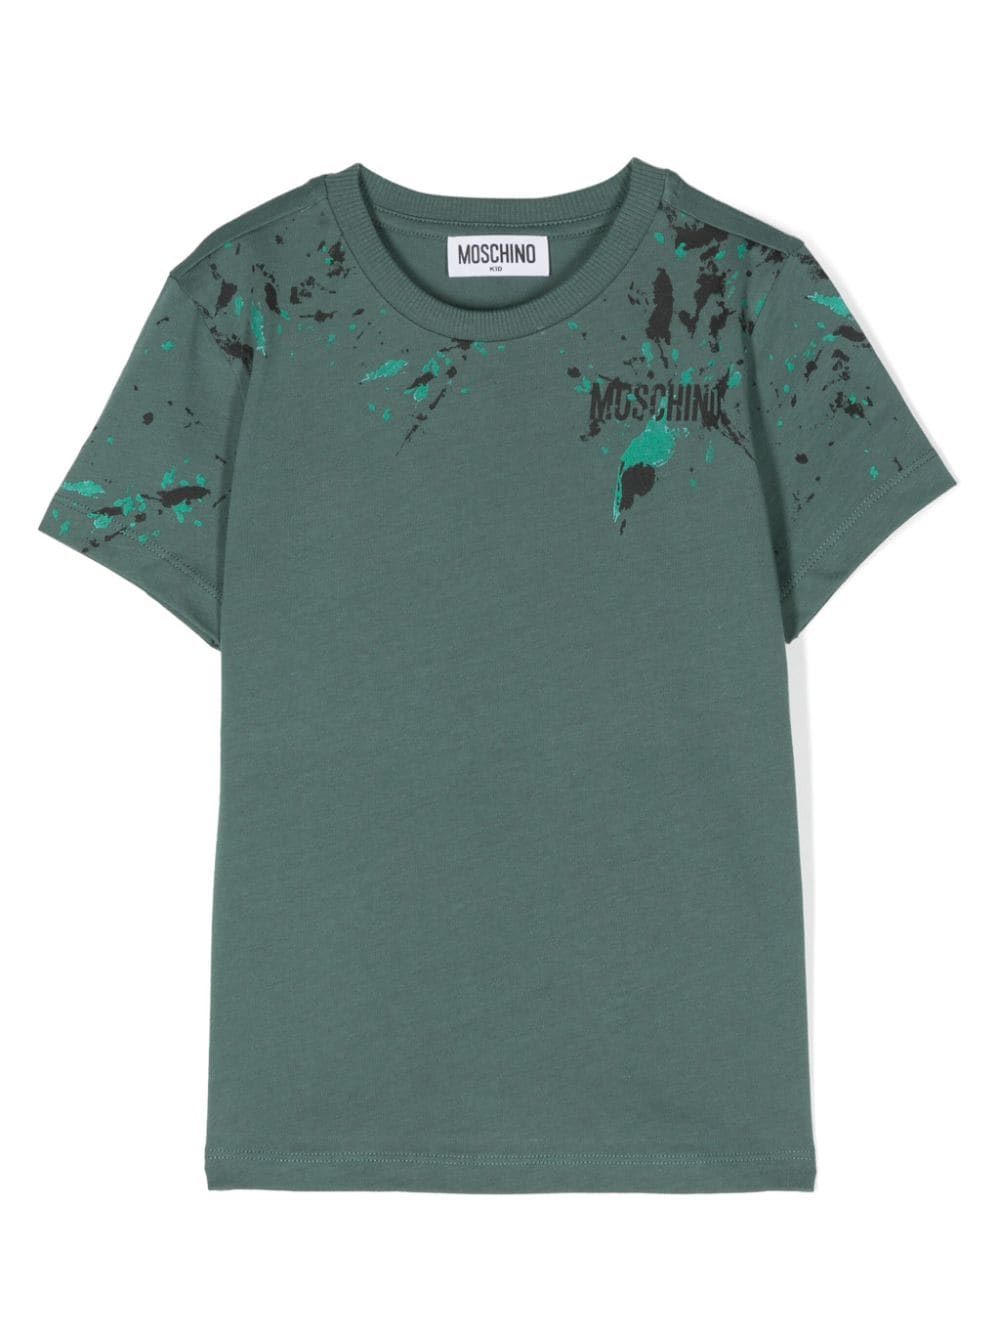 Moschino Green Paint Splash Logo Tee Shirt